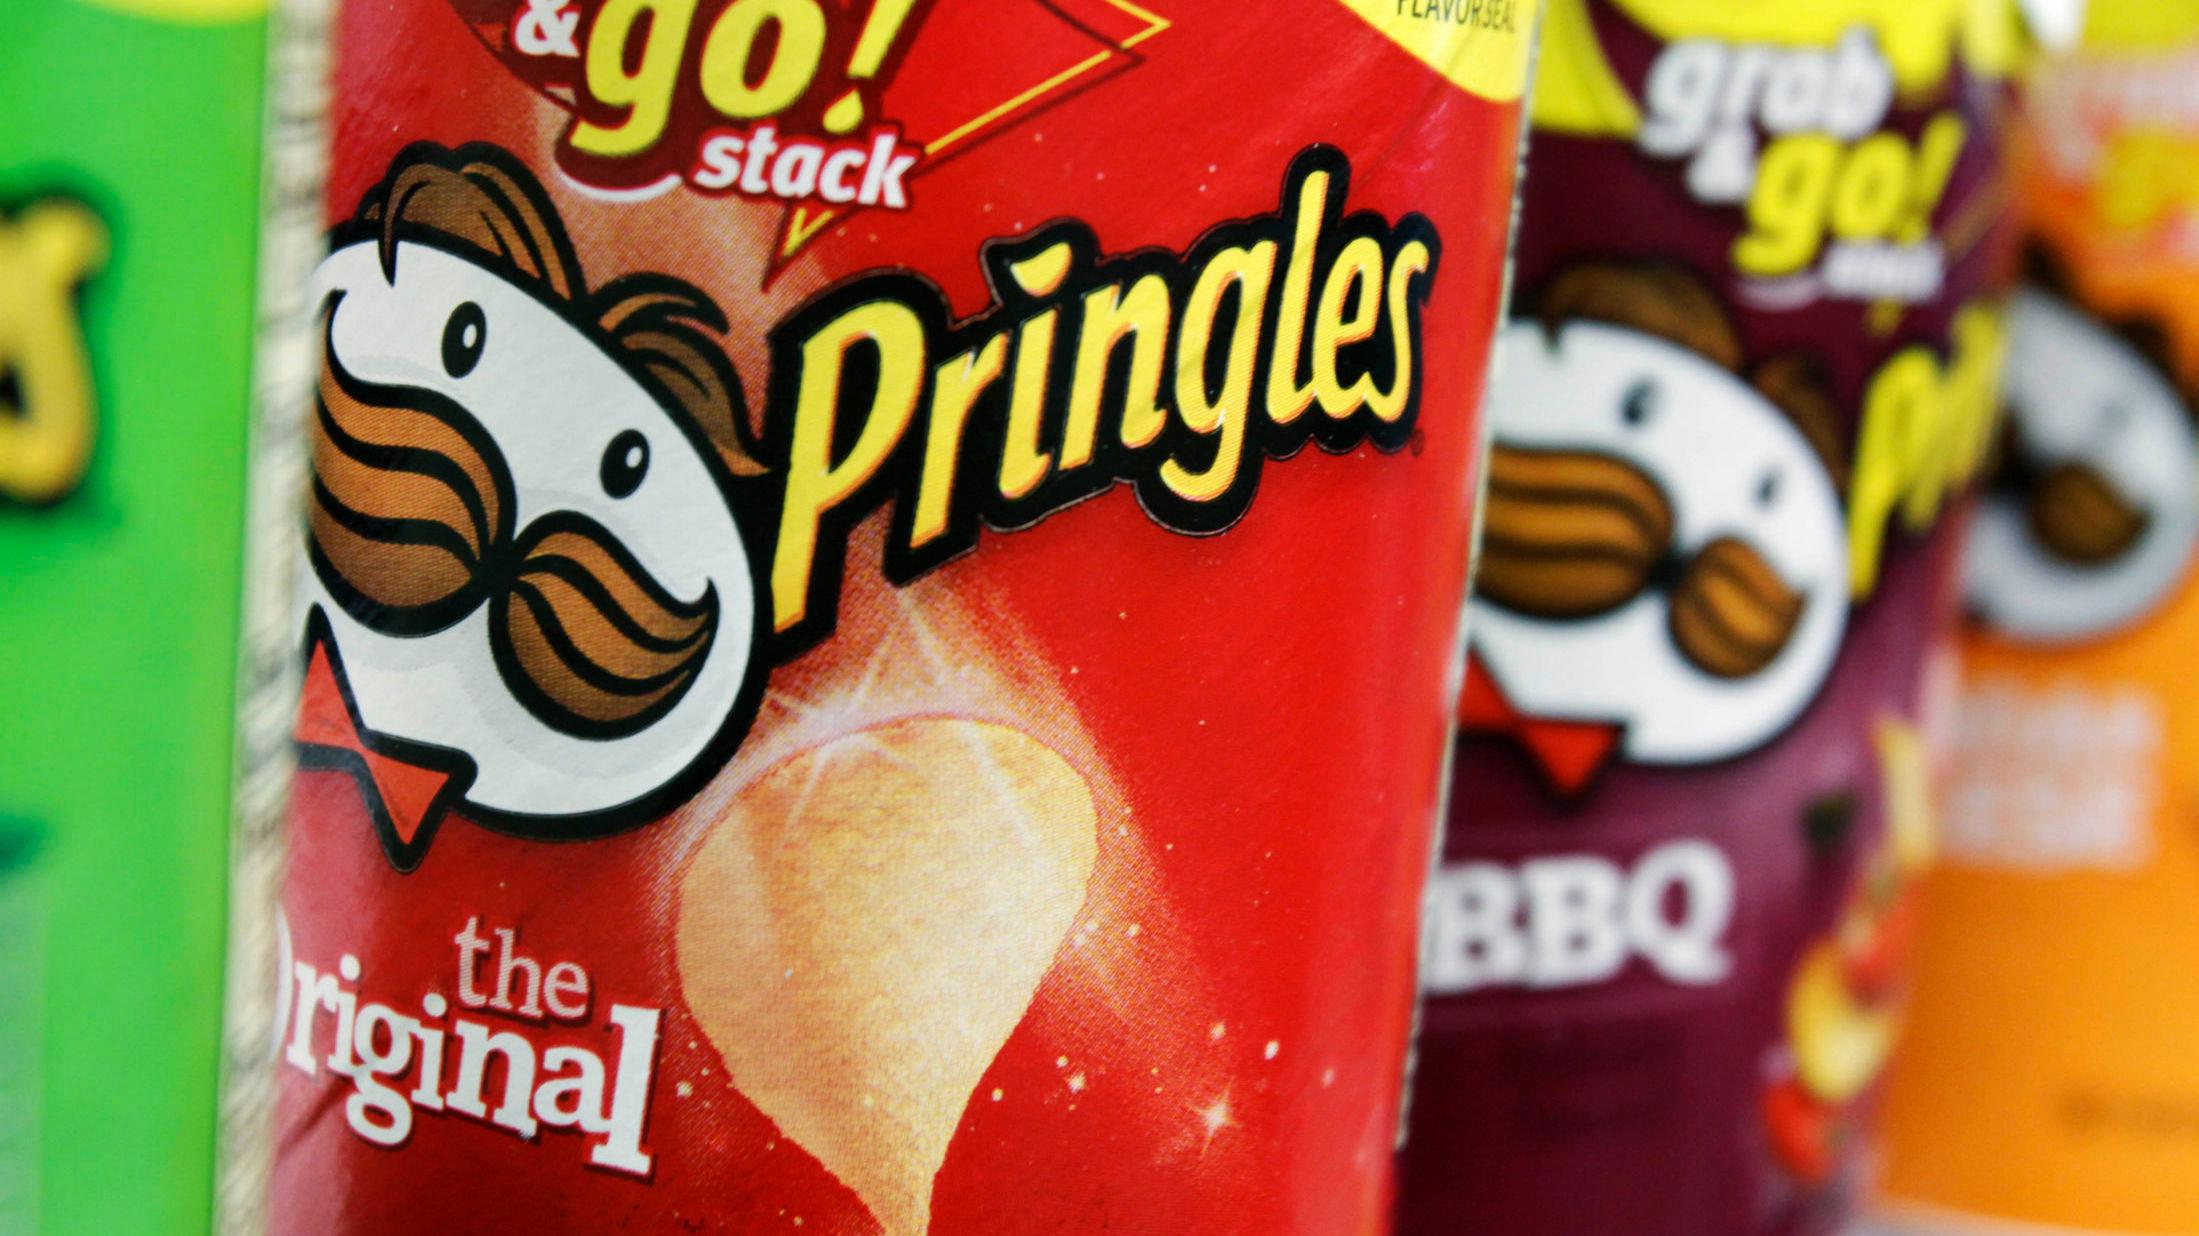 POPULÆRT: Pringles er britenes nest mest populære potetgullmerke. Foto: Pat Wellenbach/AP